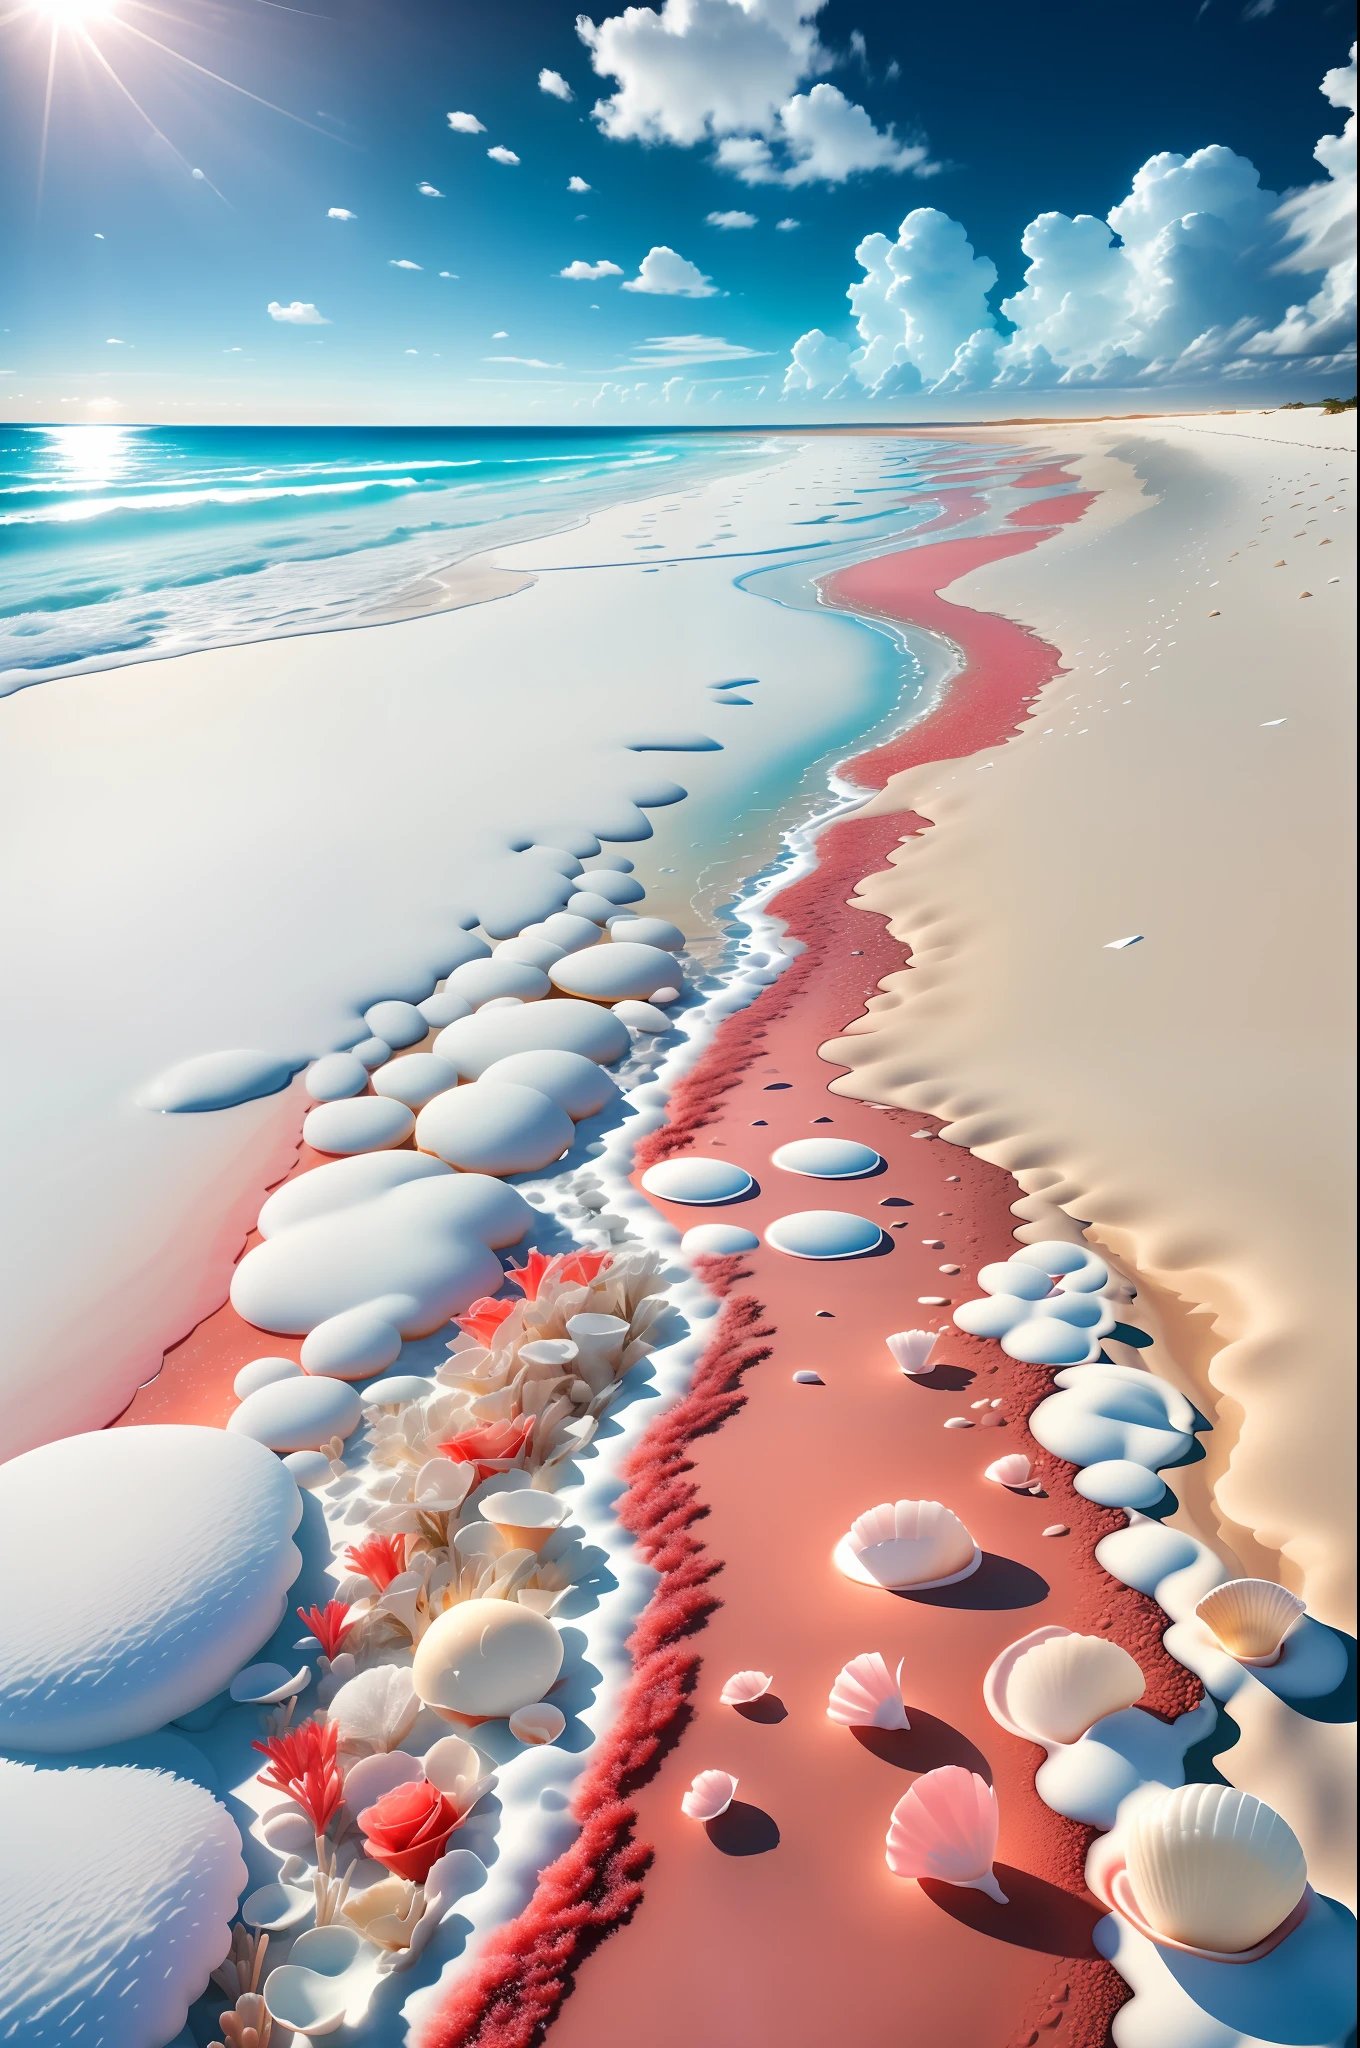 cena delicada,profundidade de campo, 8K, O céu de marfim,nuvens brancas,e a luz do sol brilha na praia branca como a neve. O mar de corais,e muitas conchas coloridas na praia,rosas vermelhas, foco de rosas,